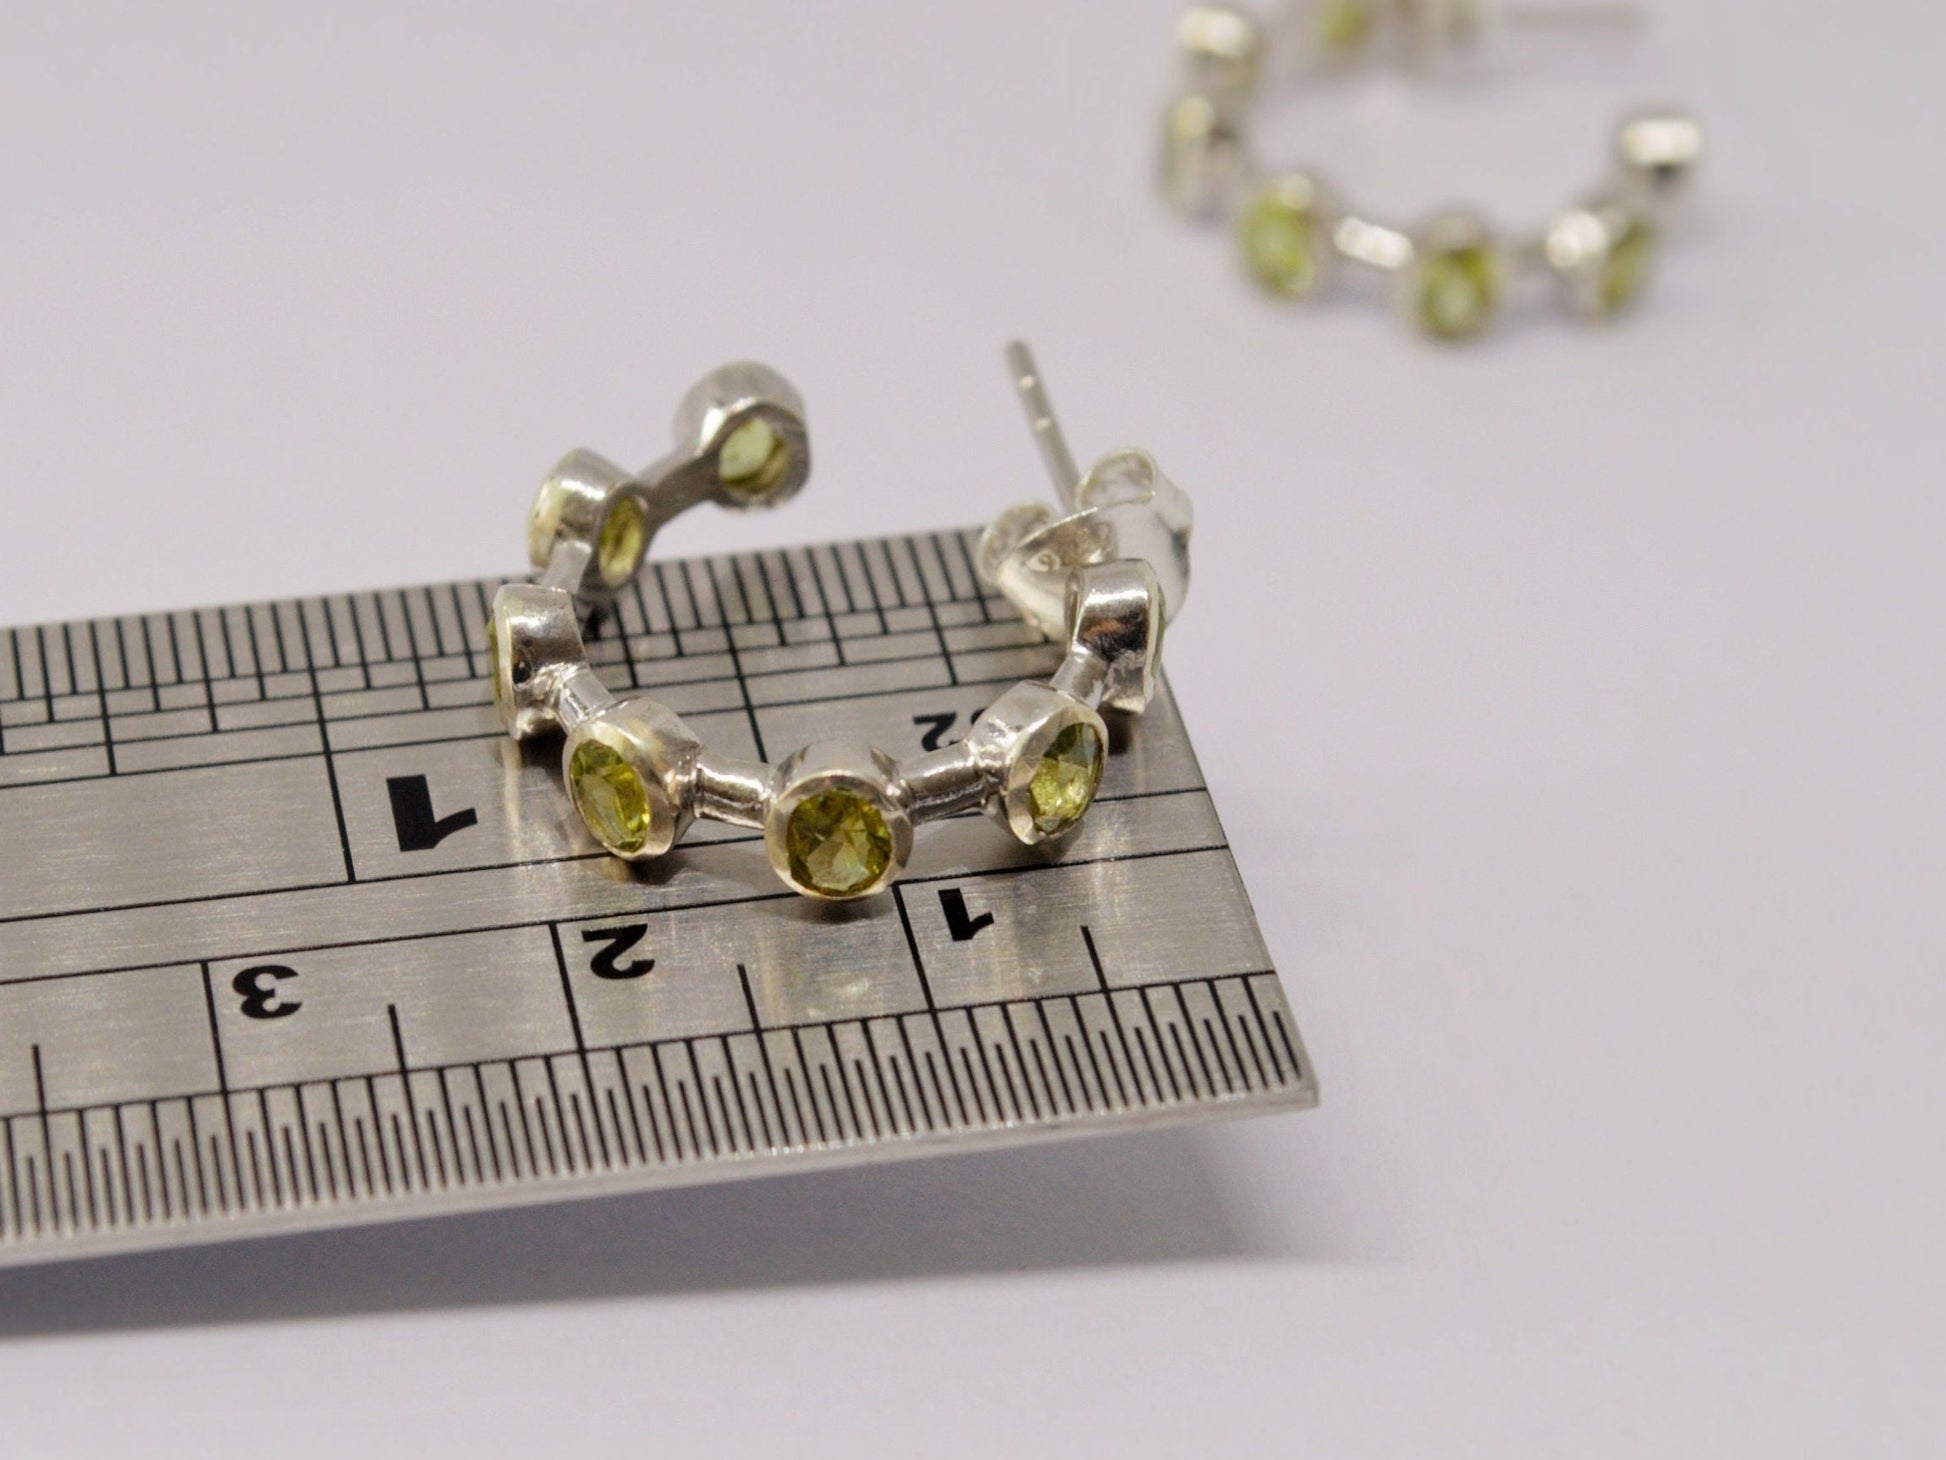 Peridot Sterling Silver Hoop Earrings, Peridot Jewelry, August Birthstone Earrings, Minimalist Green Earrings, Unique Gifts For Her